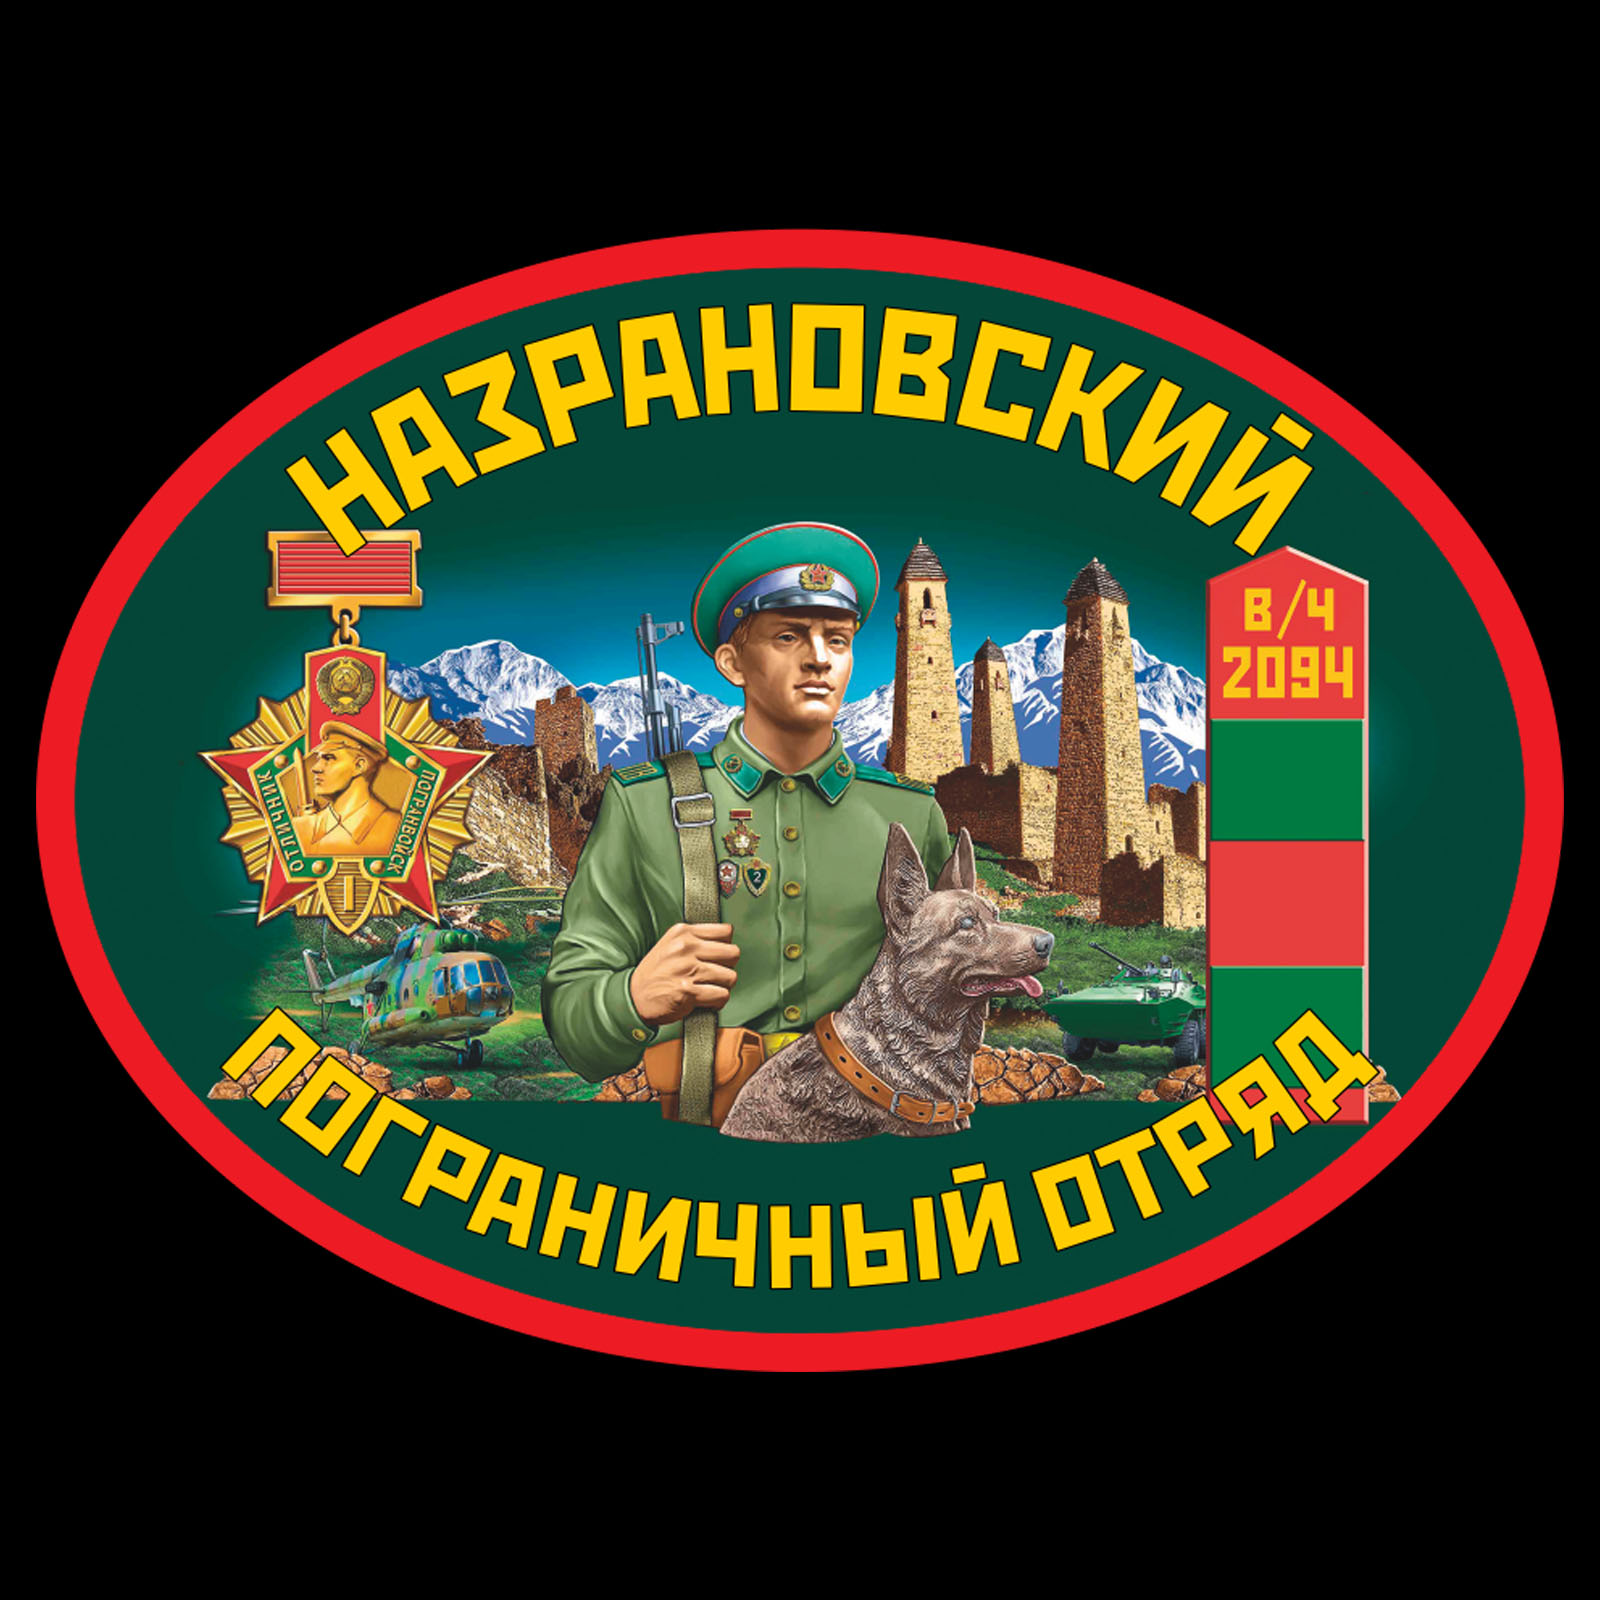 Термотрансфер Назрановский пограничный отряд